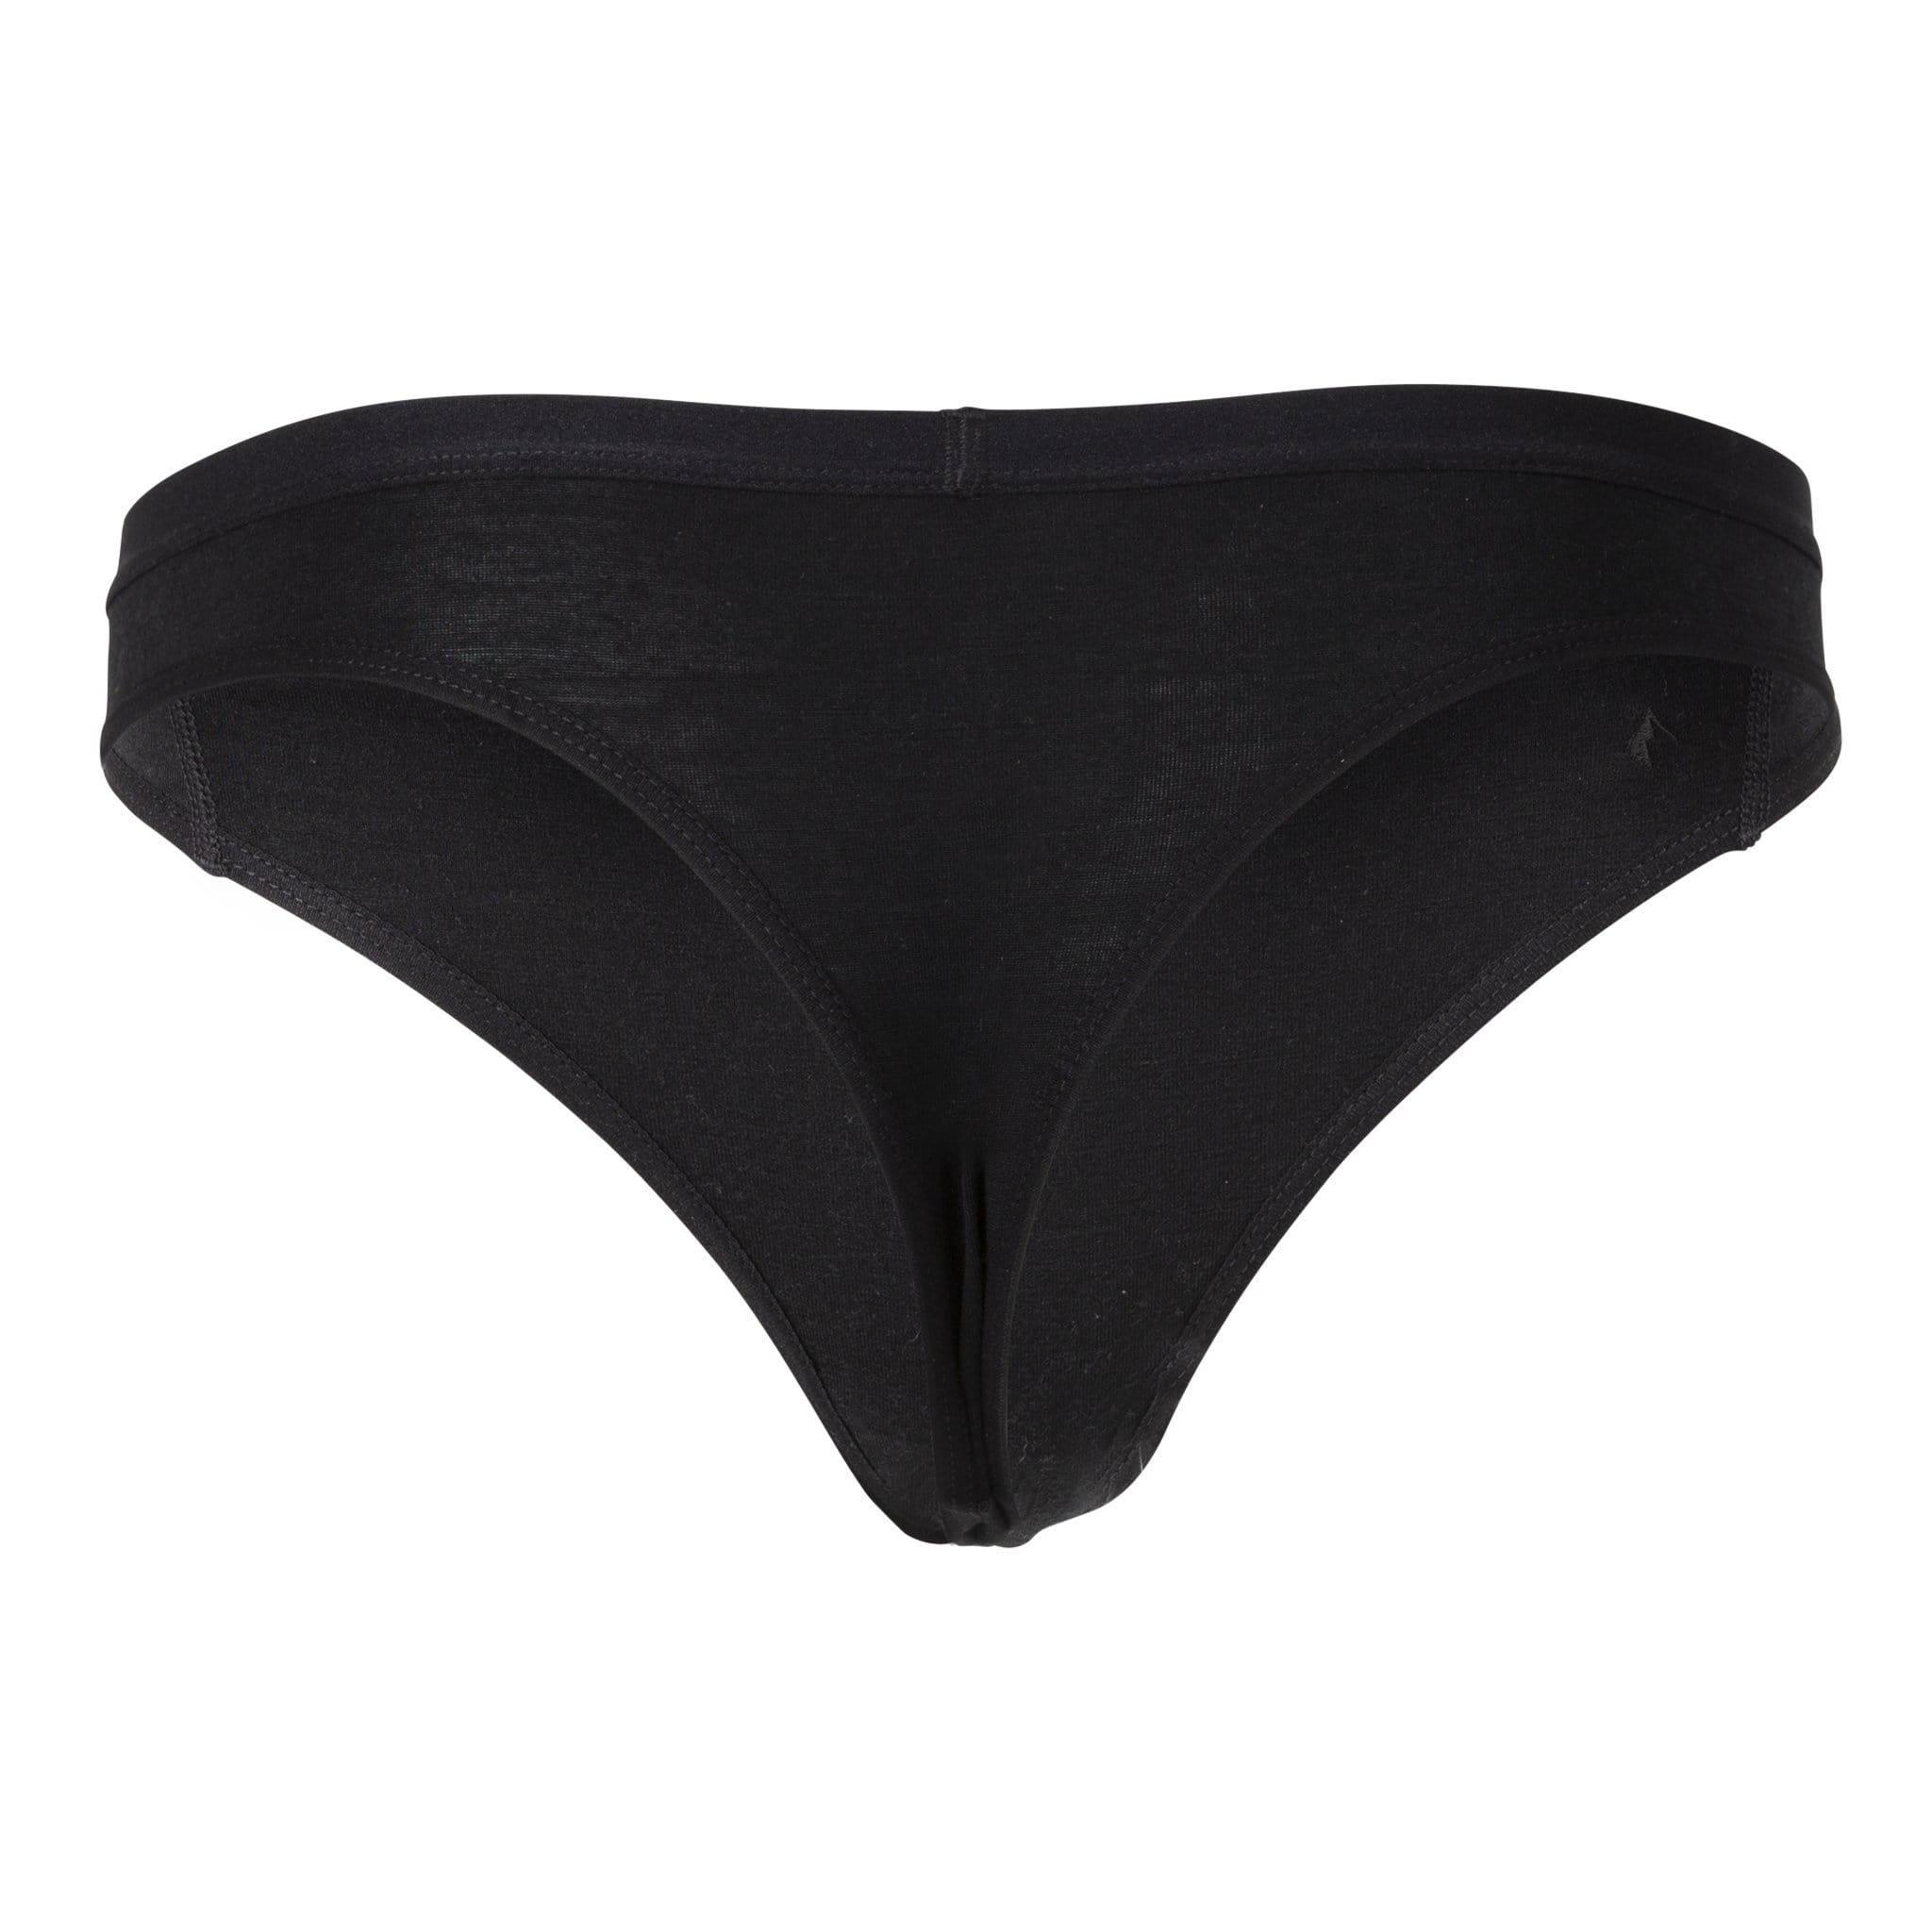 REI Co-op Merino Thong Underwear - Women's